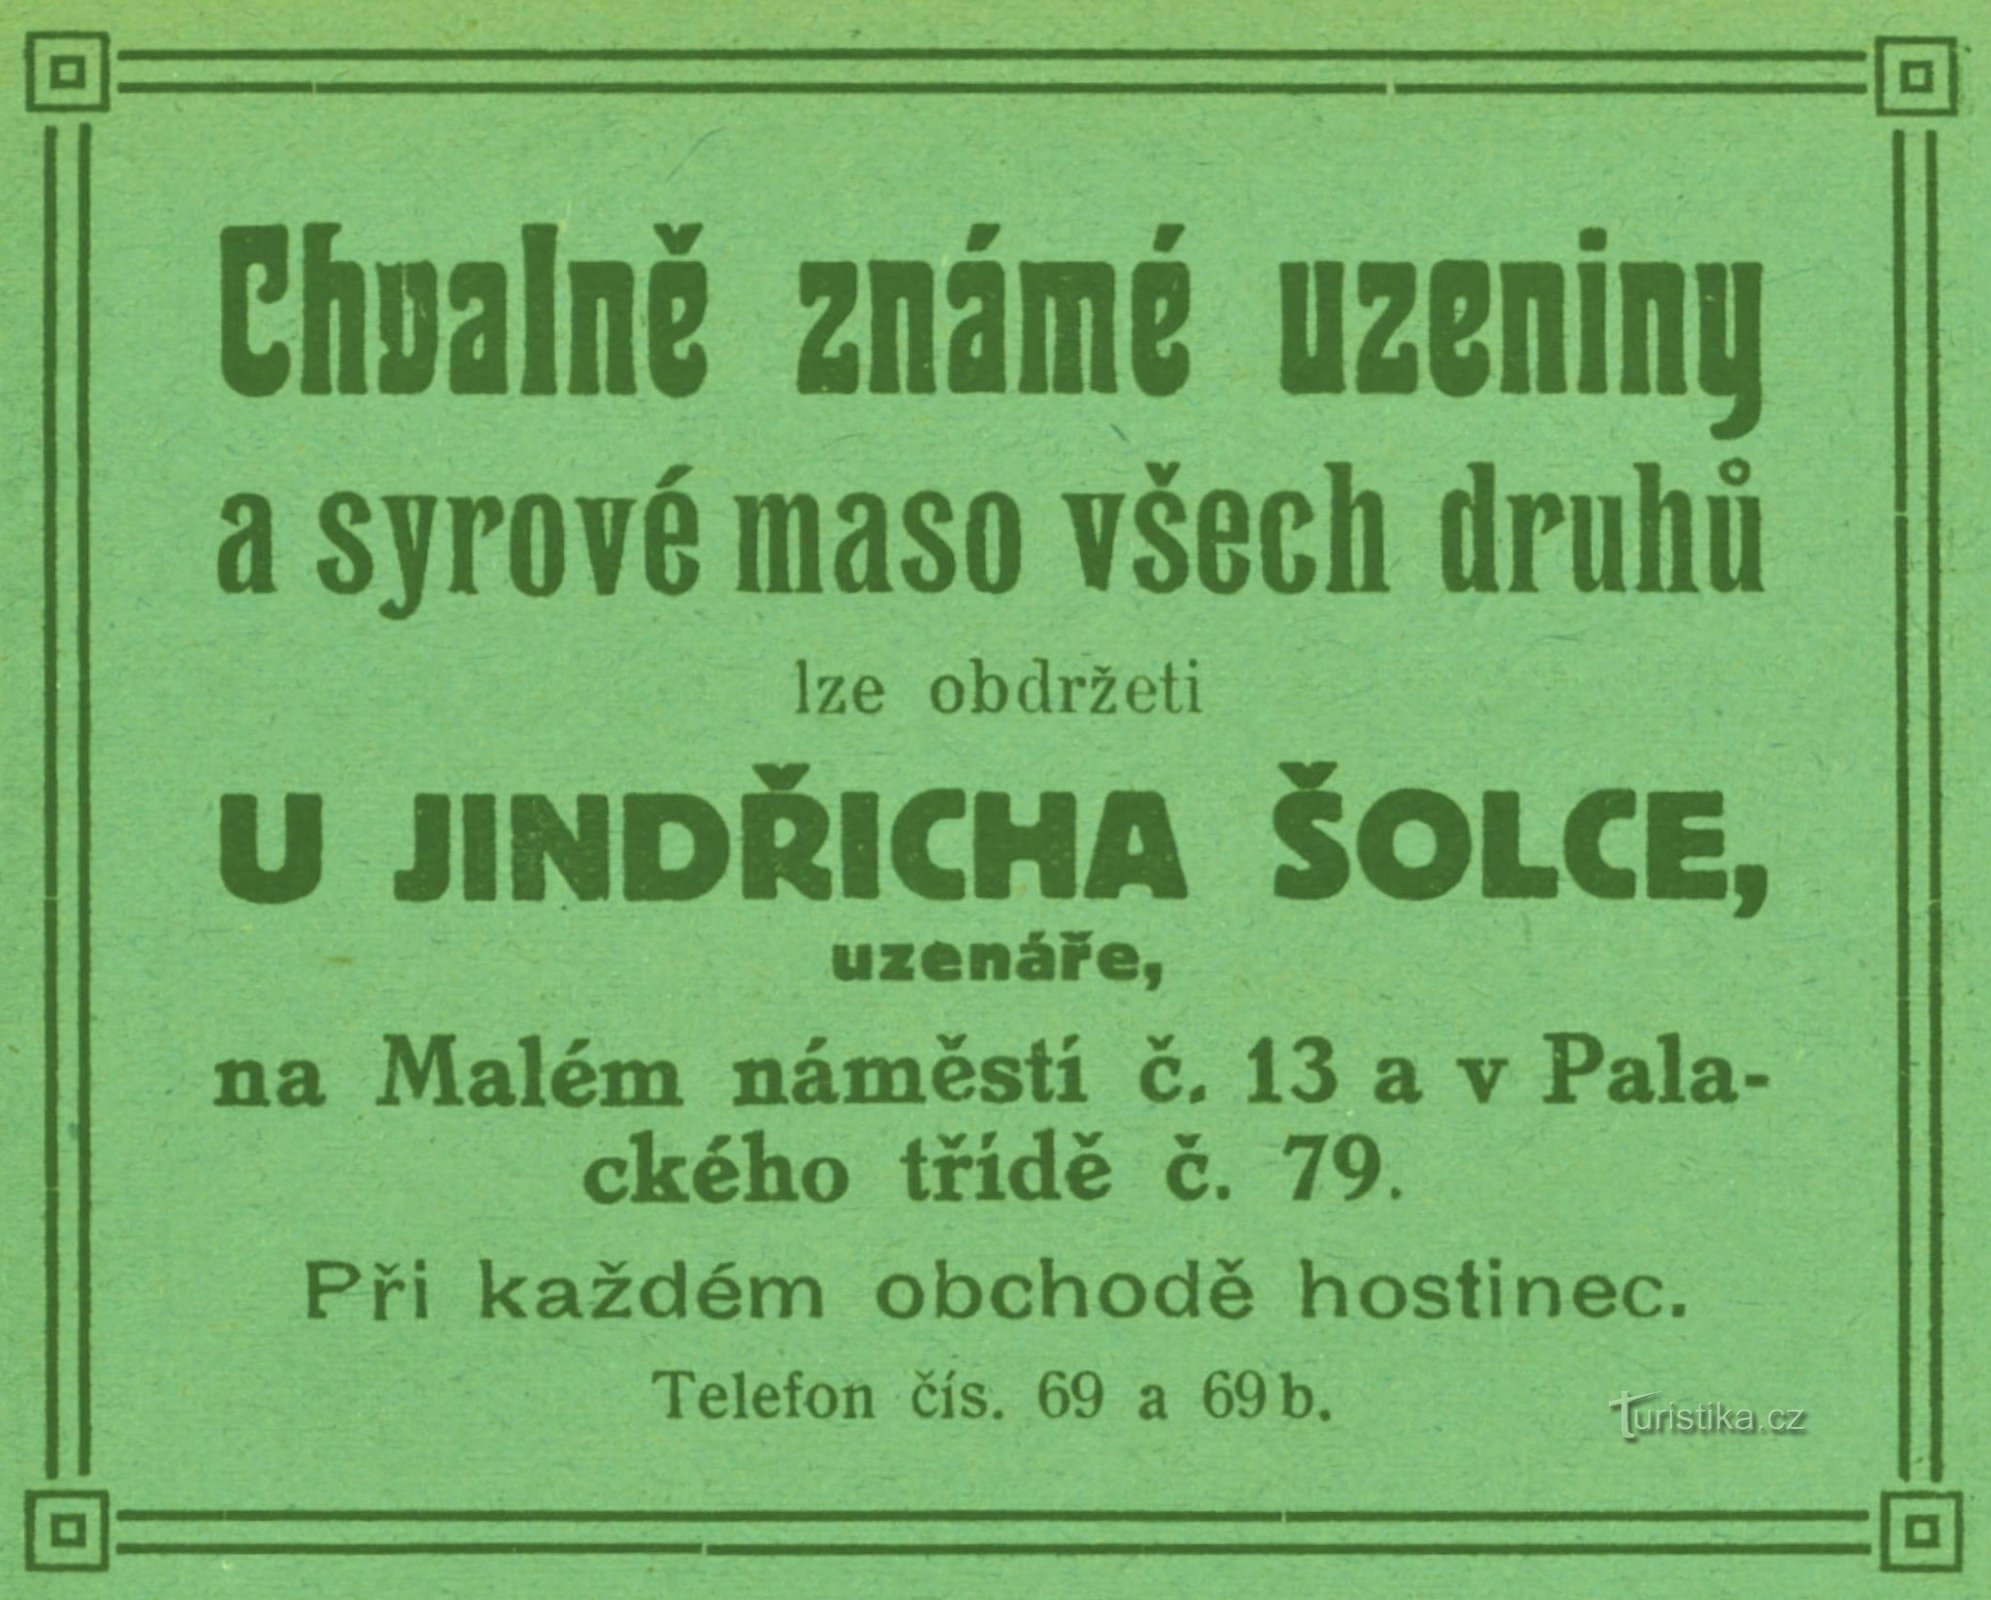 Jindřich Šolec hentesüzletének hirdetése 1911-ből